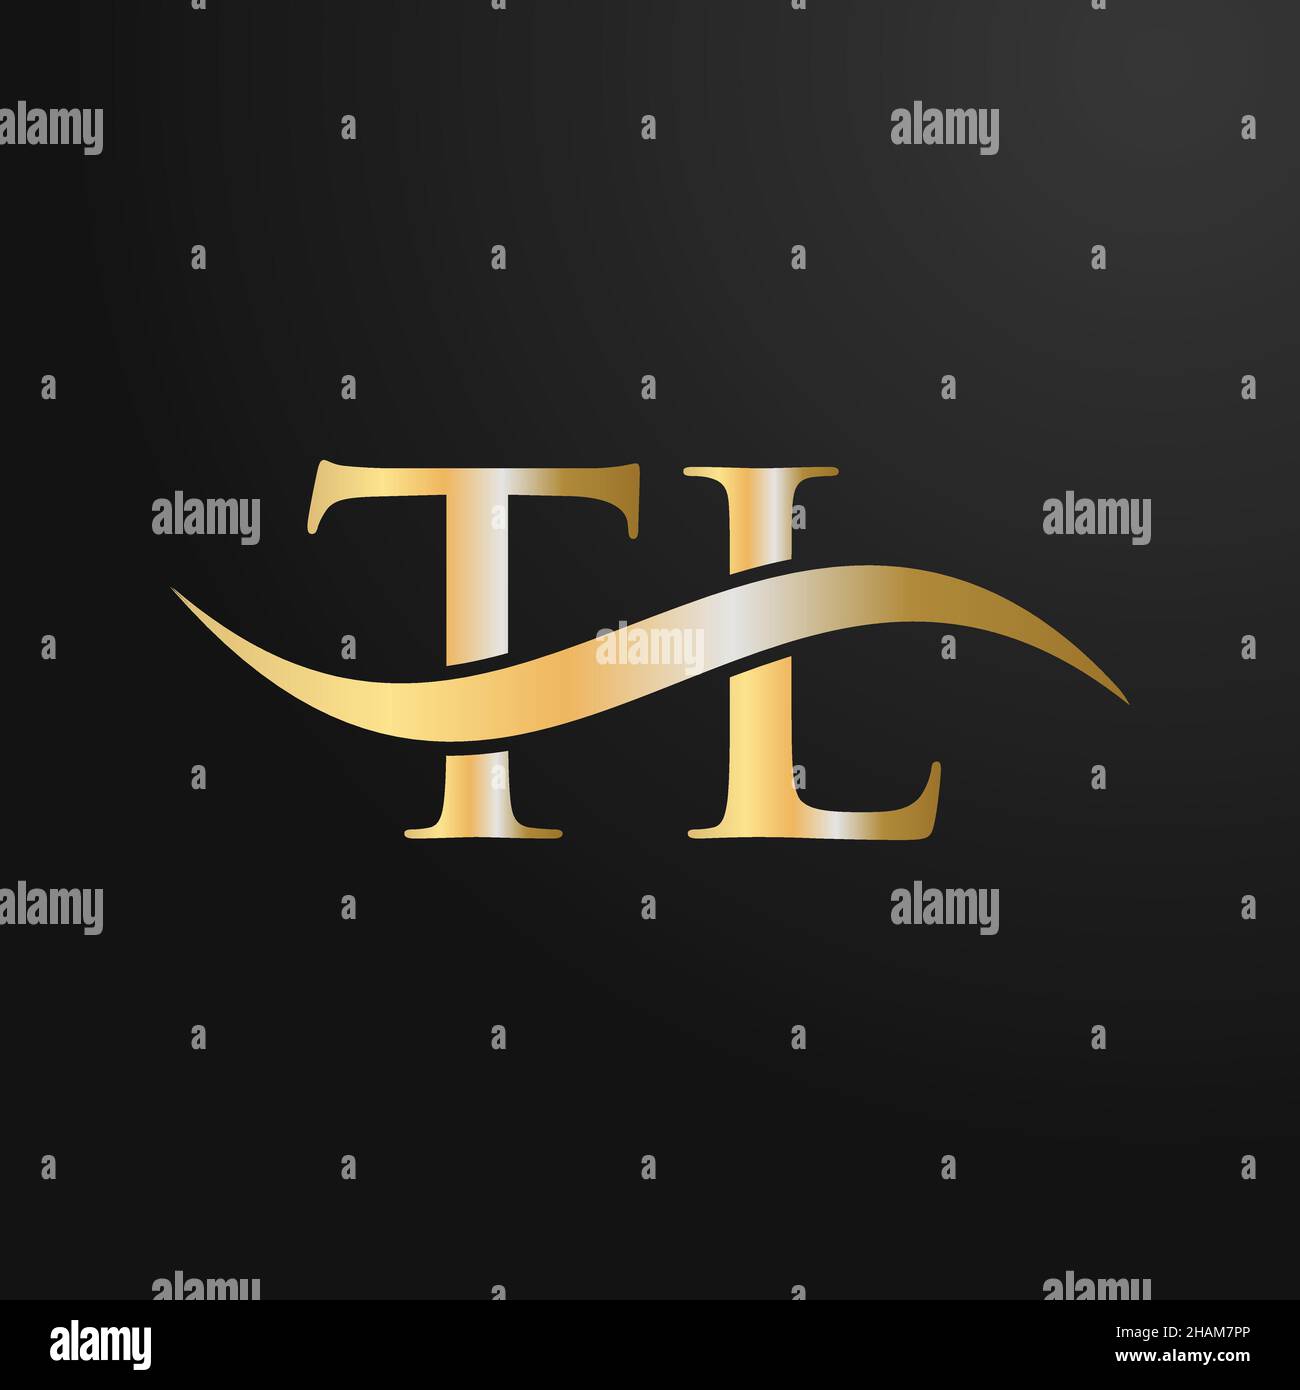 Design-Vorlage für TL-Logo. TL, T L Buchstabe Logo modern, flach, minimalistisch, Geschäft, Firmenzeichen Stock Vektor